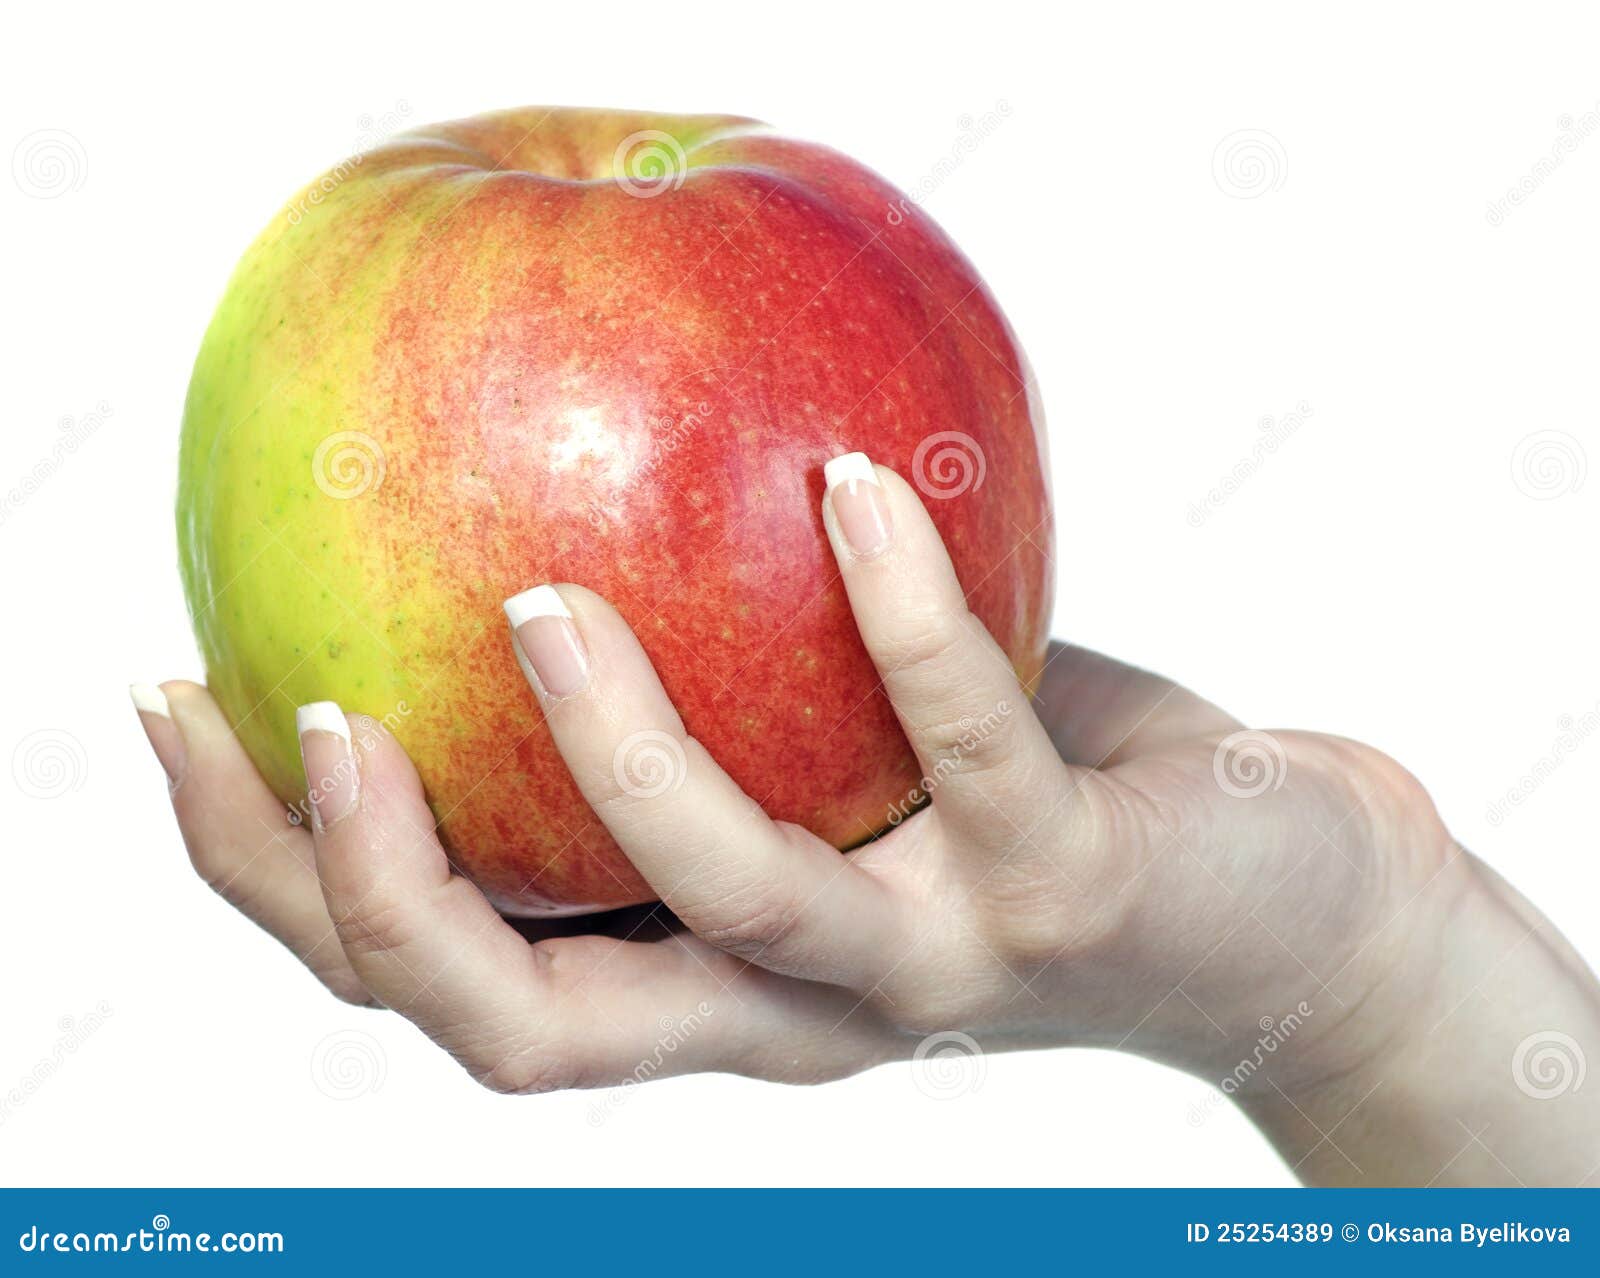 Яблоко в руке на белом фоне